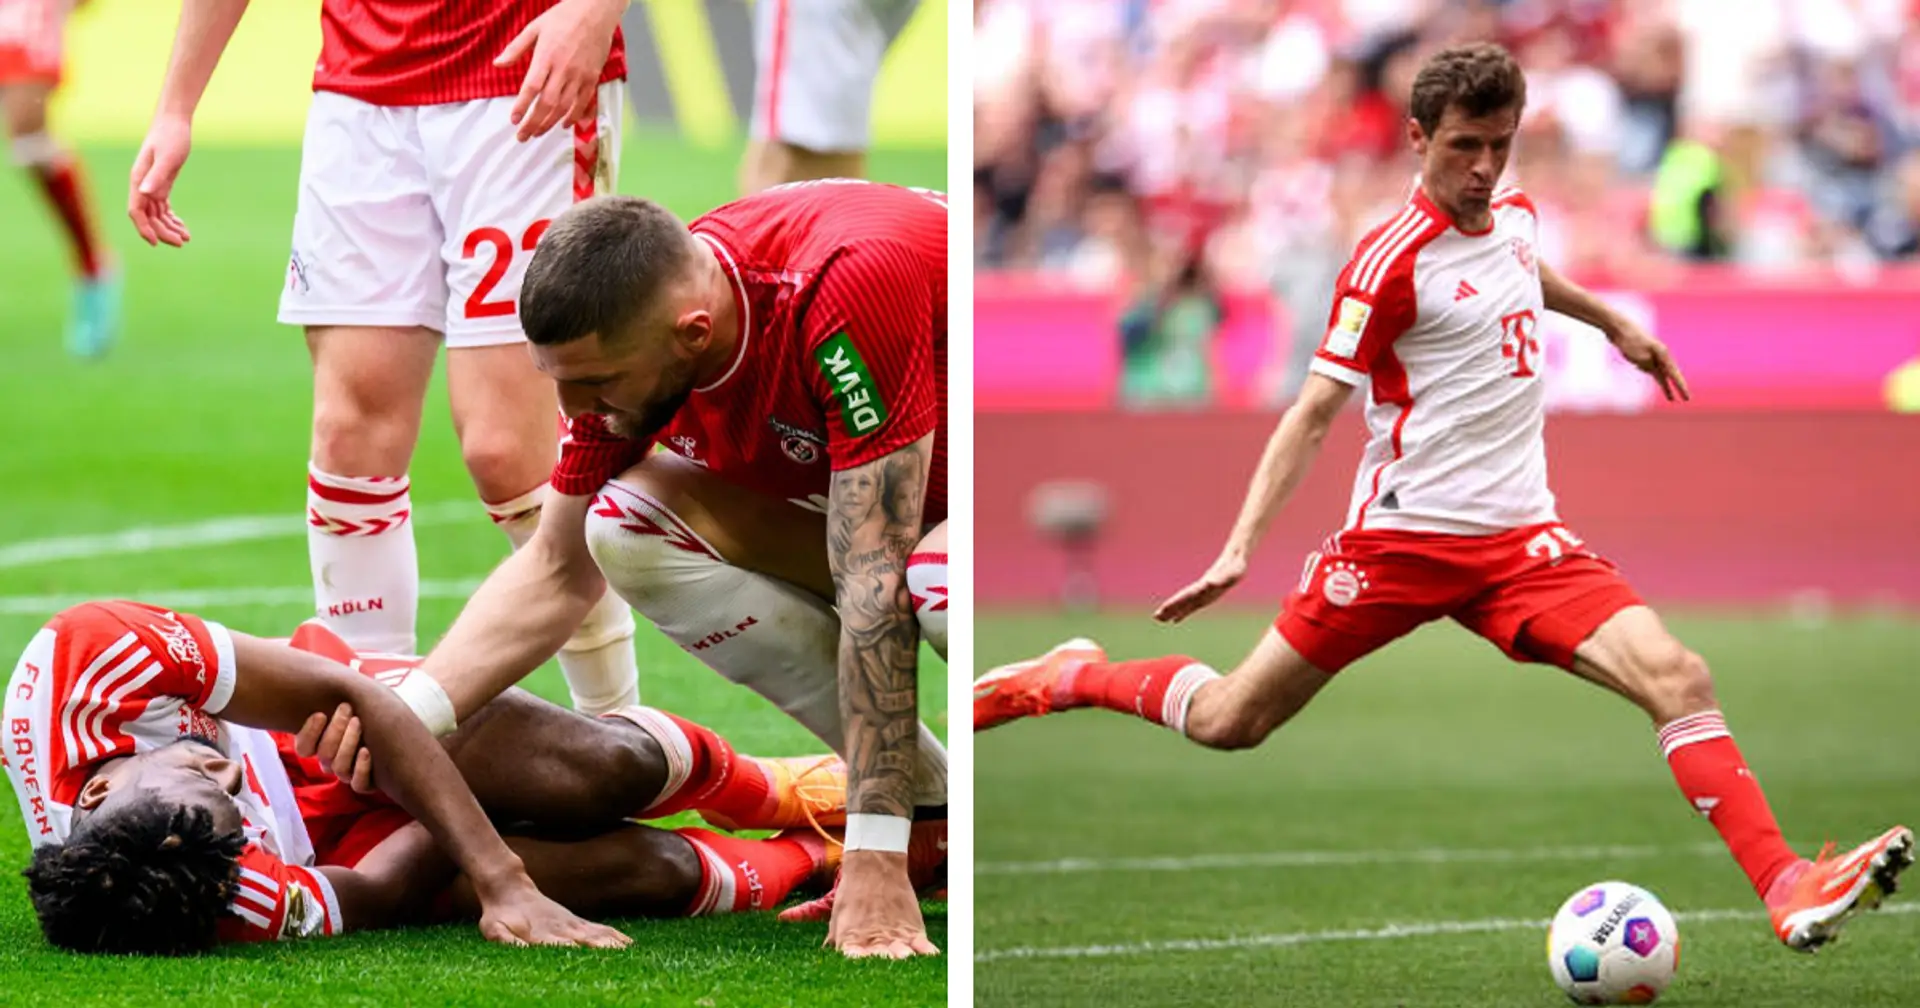 Sparmodus und Coman-Verletzung: 3 Kernpunkte zum 2:0-Sieg des FC Bayern gegen den 1. FC Köln